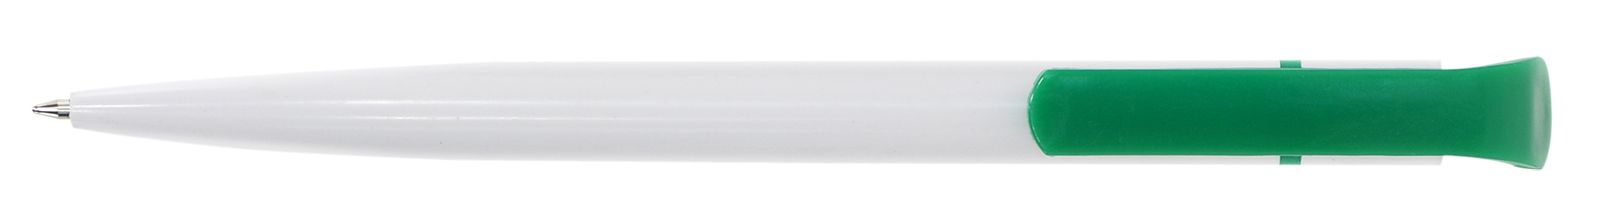 Ручка для логотипа шариковая автоматическая INFORMAT НИКА 0,7 мм, синяя, бело-зеленый корпус